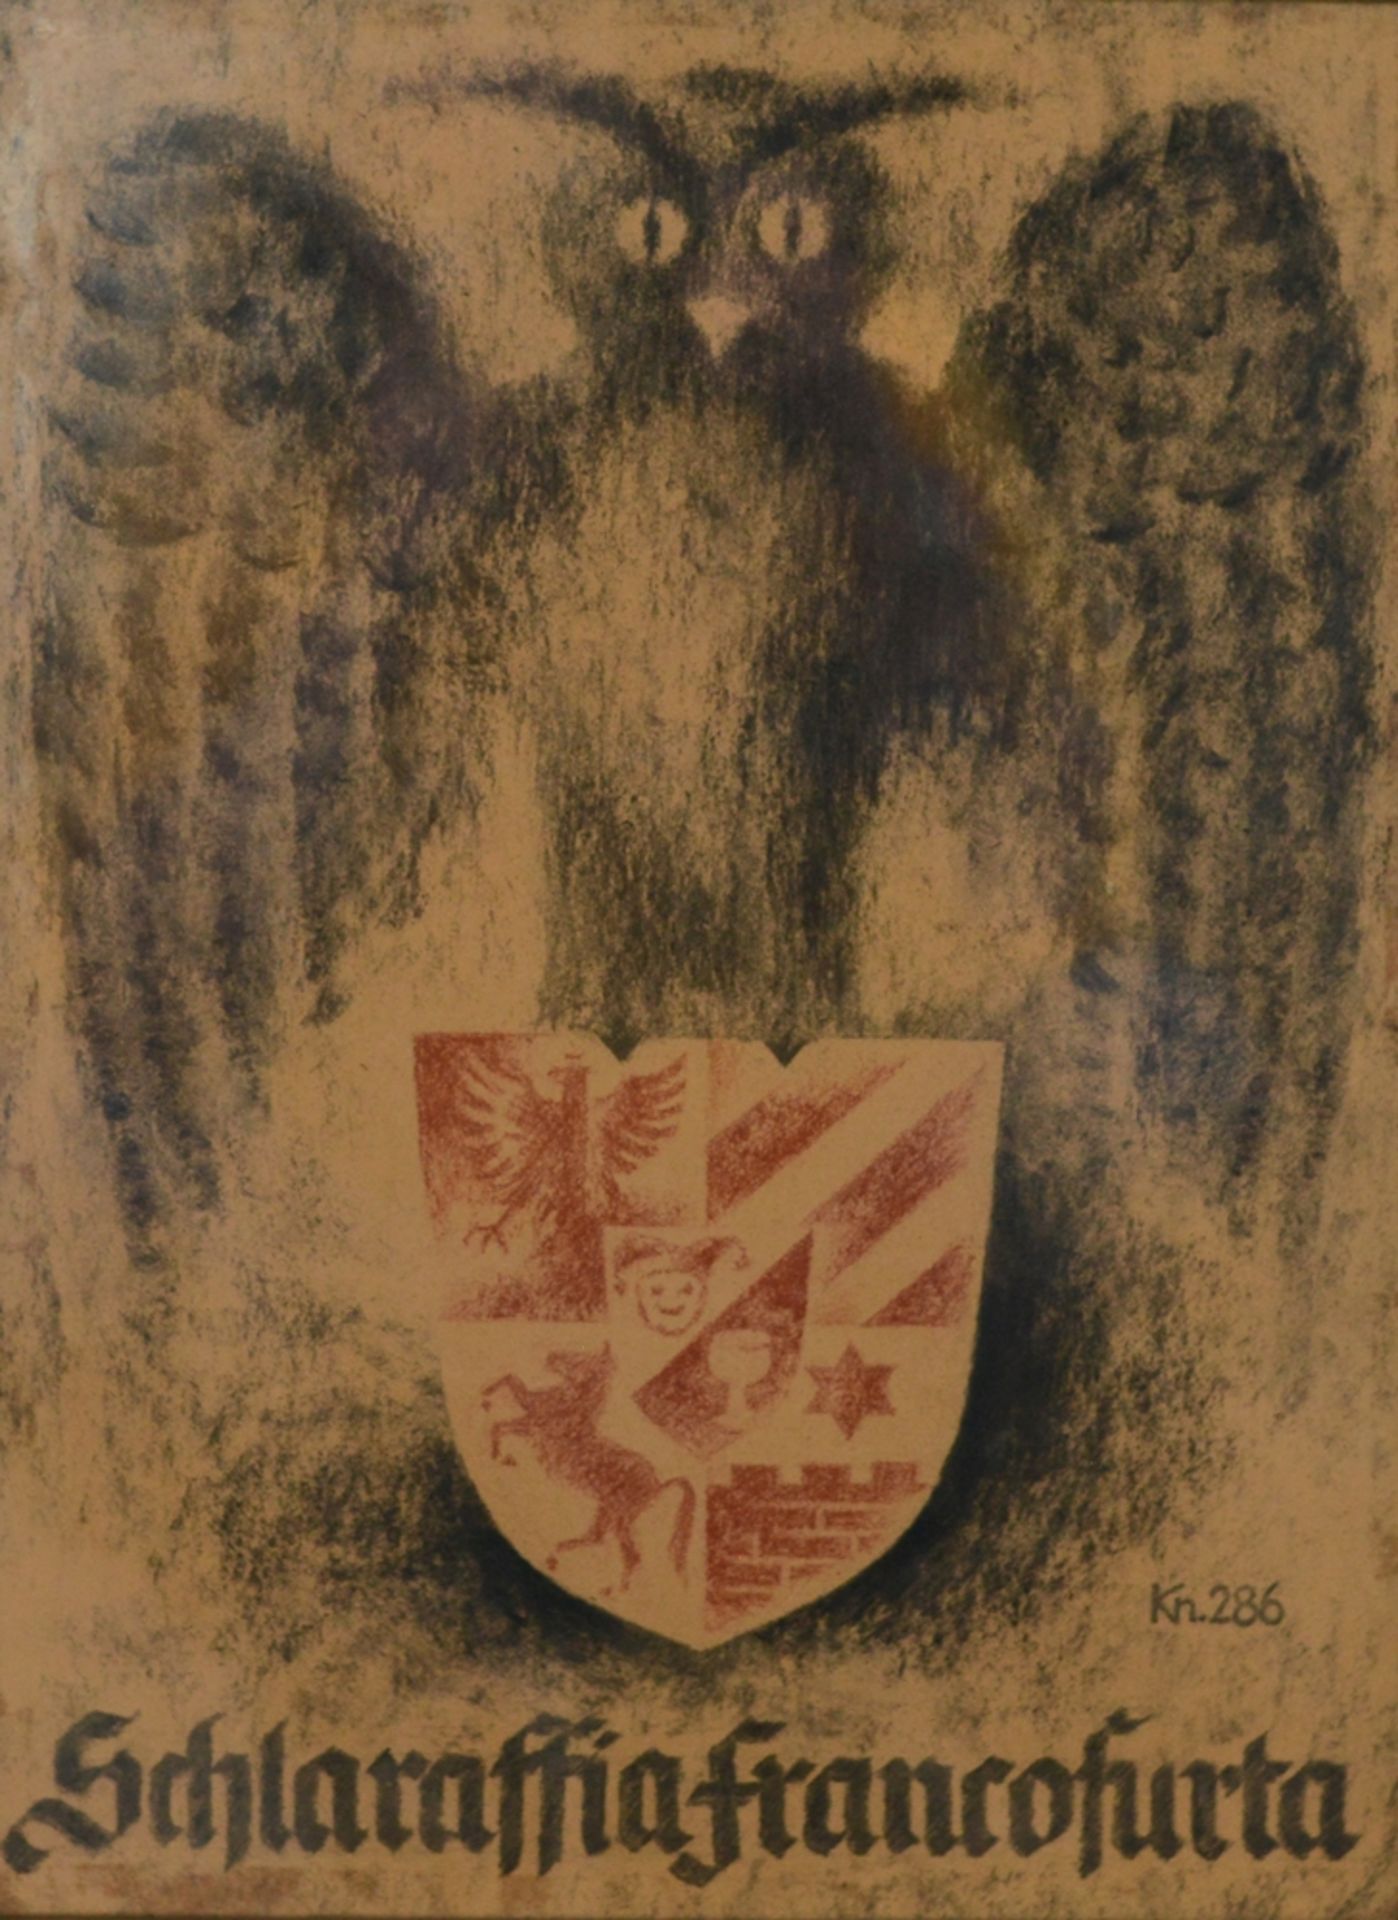 Schlaraffia Francofurta, Eule mit Wappen, Kn.286, Pastellkreide, hinter Glas gerahmt, 41x31cm (mit